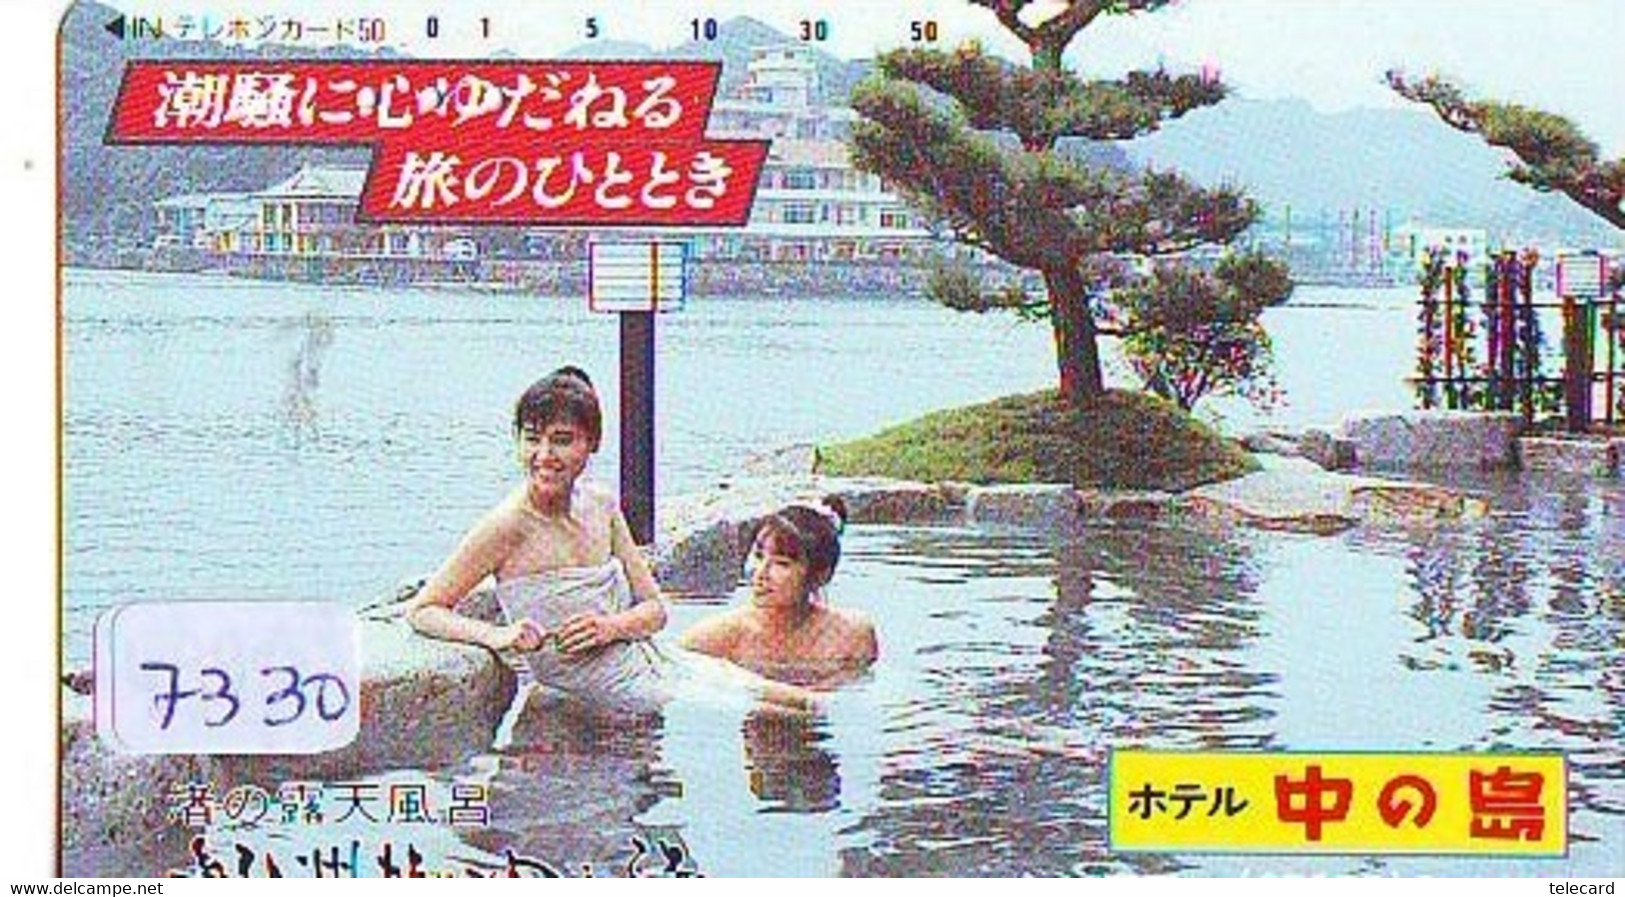 Télécarte Japon * FEMME EROTIQUE (7330) BATH * PHONECARD JAPAN * TELEFONKARTE *  BATHCLOTHES LINGERIE - Fashion